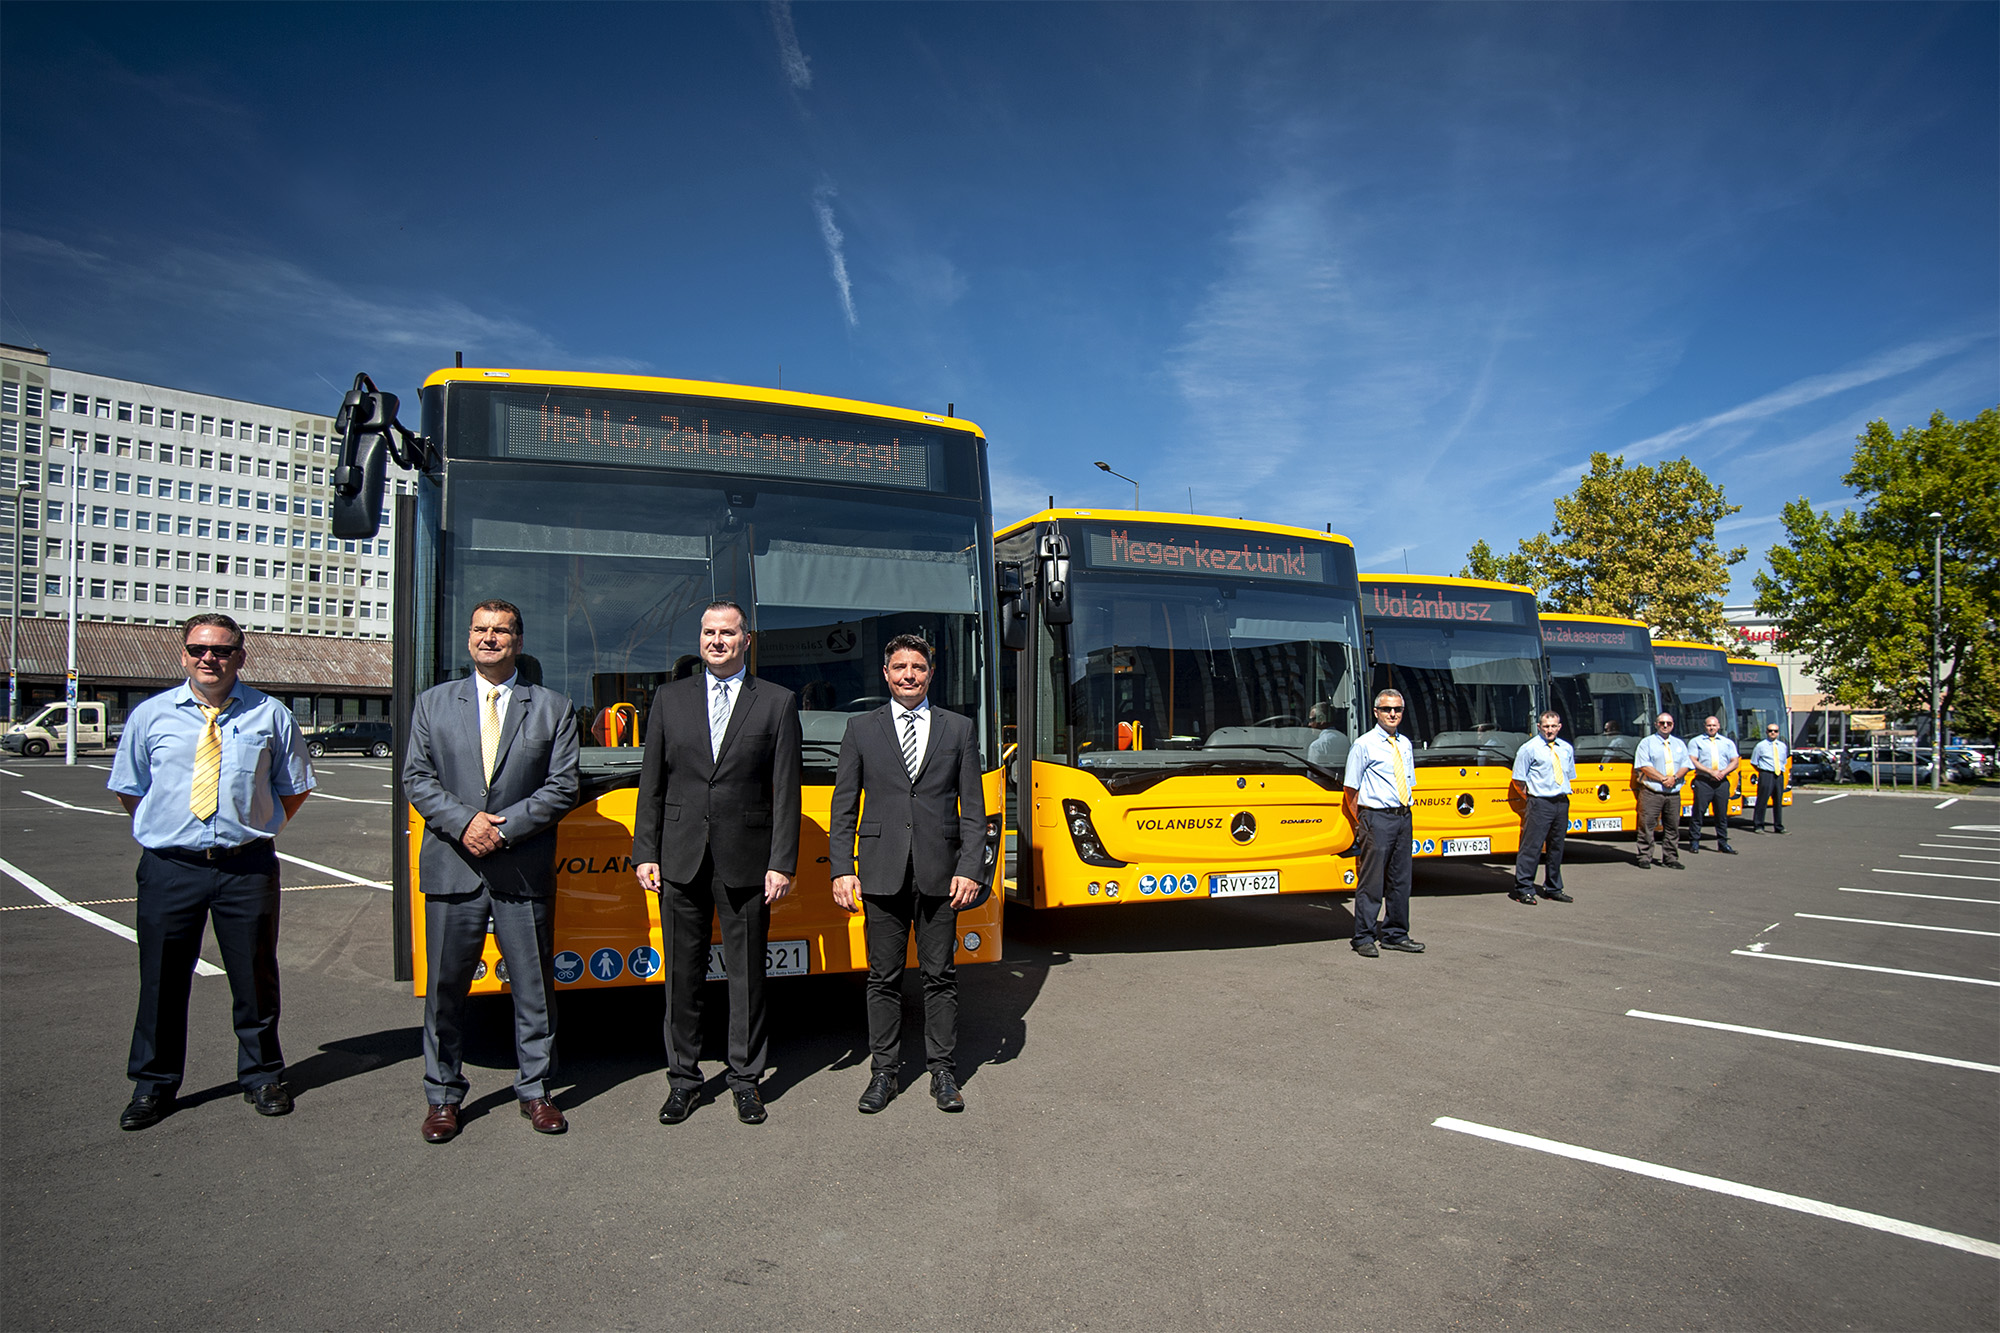 A képen a sajtótájékoztatón részvevők, valamint az autóbuszsofőrök az autóbuszaik mellett láthatók.